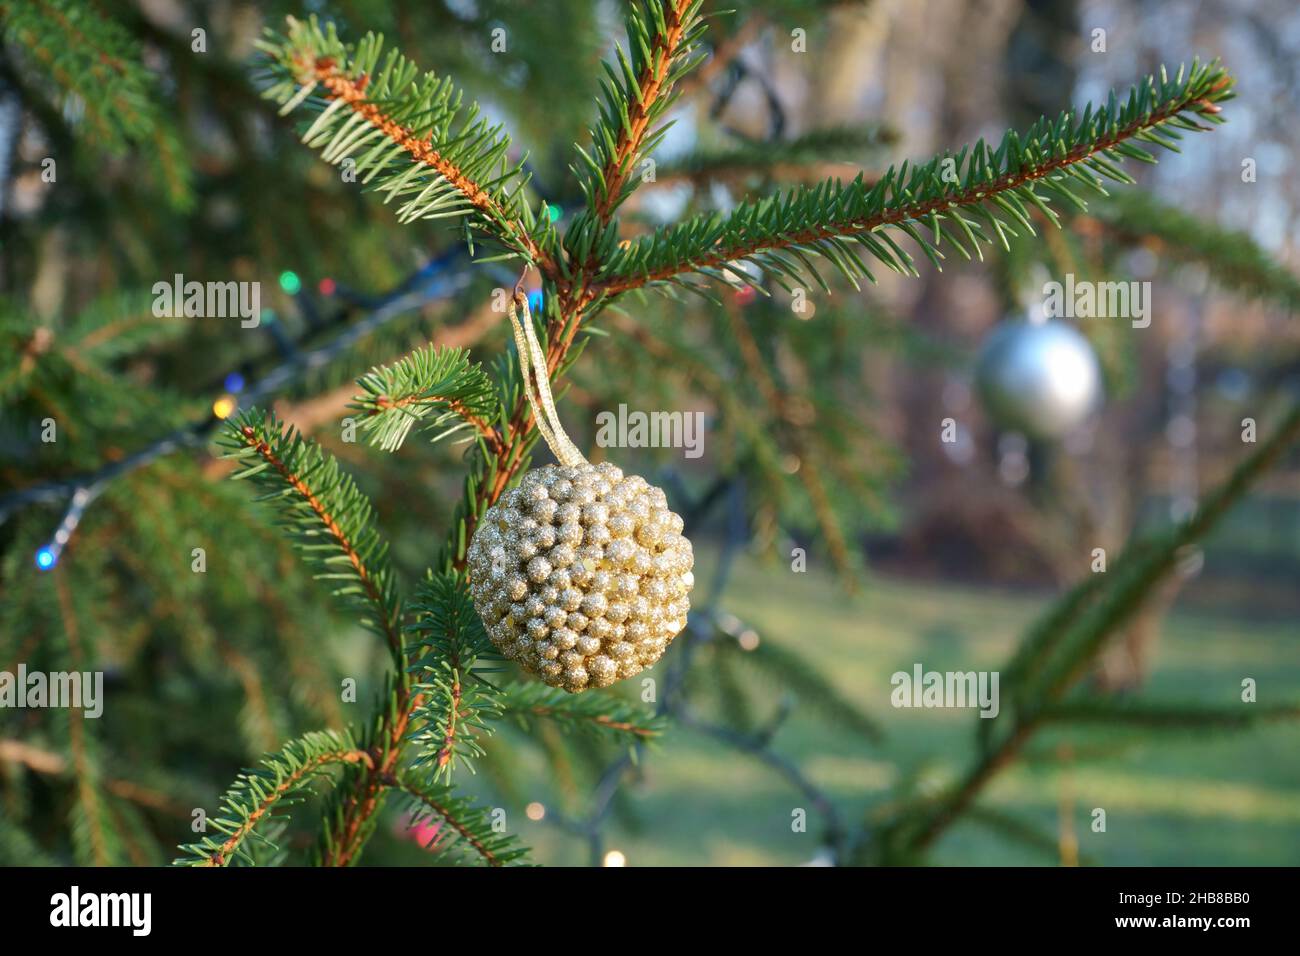 Weihnachtsbaum mit Dekoren in einer lustigen Szene an einem sonnigen Tag im Winter ohne den Schnee. Dekoriert Fichte in einem Haus Hof. Schöne silberne Kugel dazwischen Stockfoto